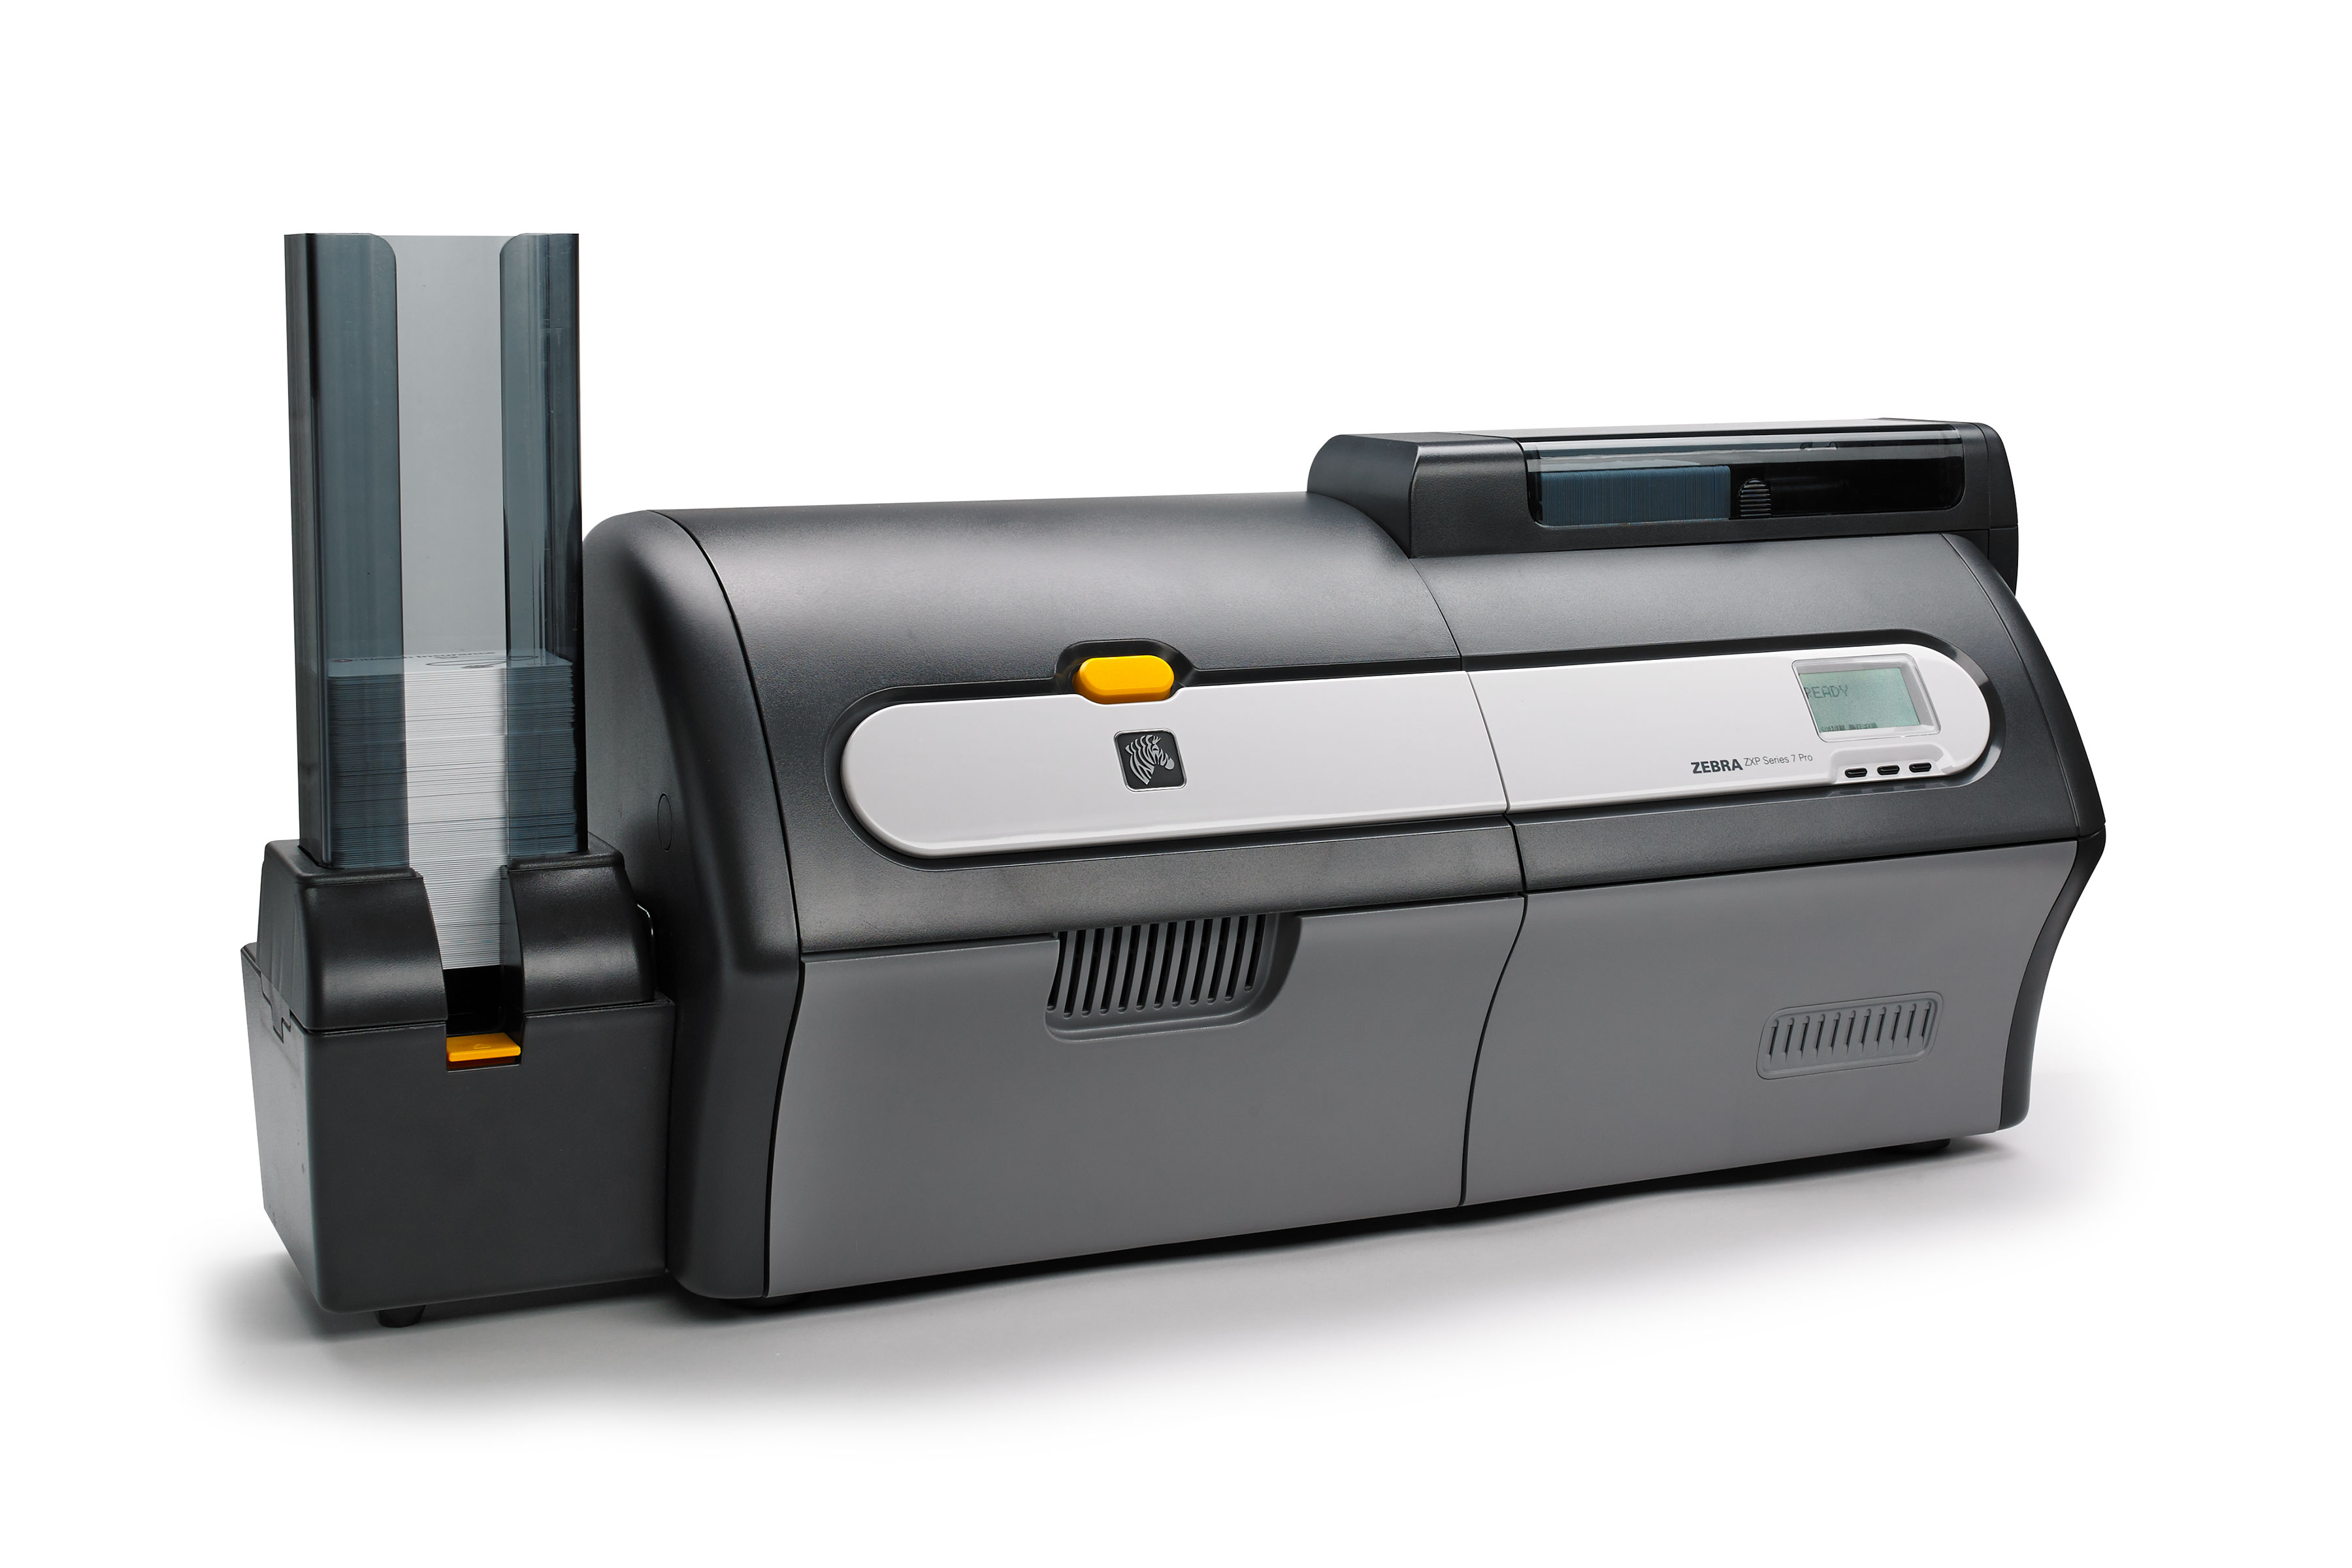 Zebra ZXP 7 Series ID Card Printer